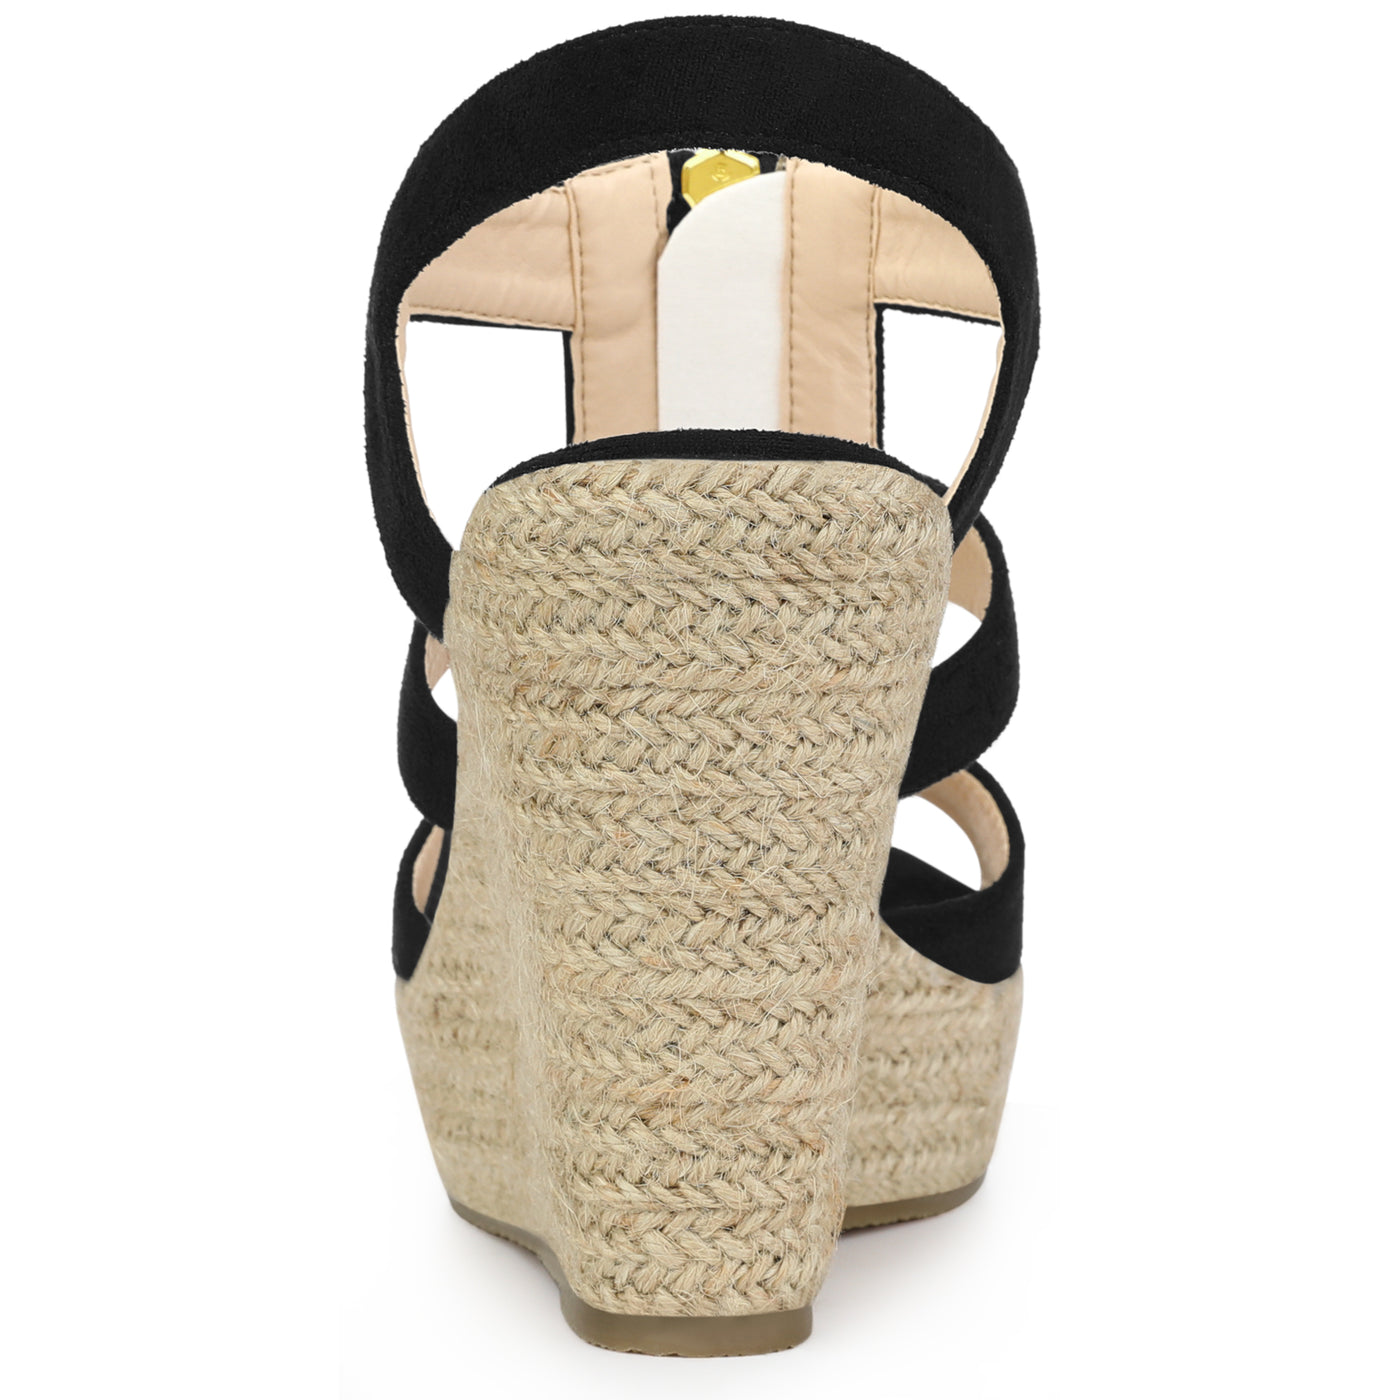 Allegra K Women's Platform Heels Slingback Zipper Wedge Sandals